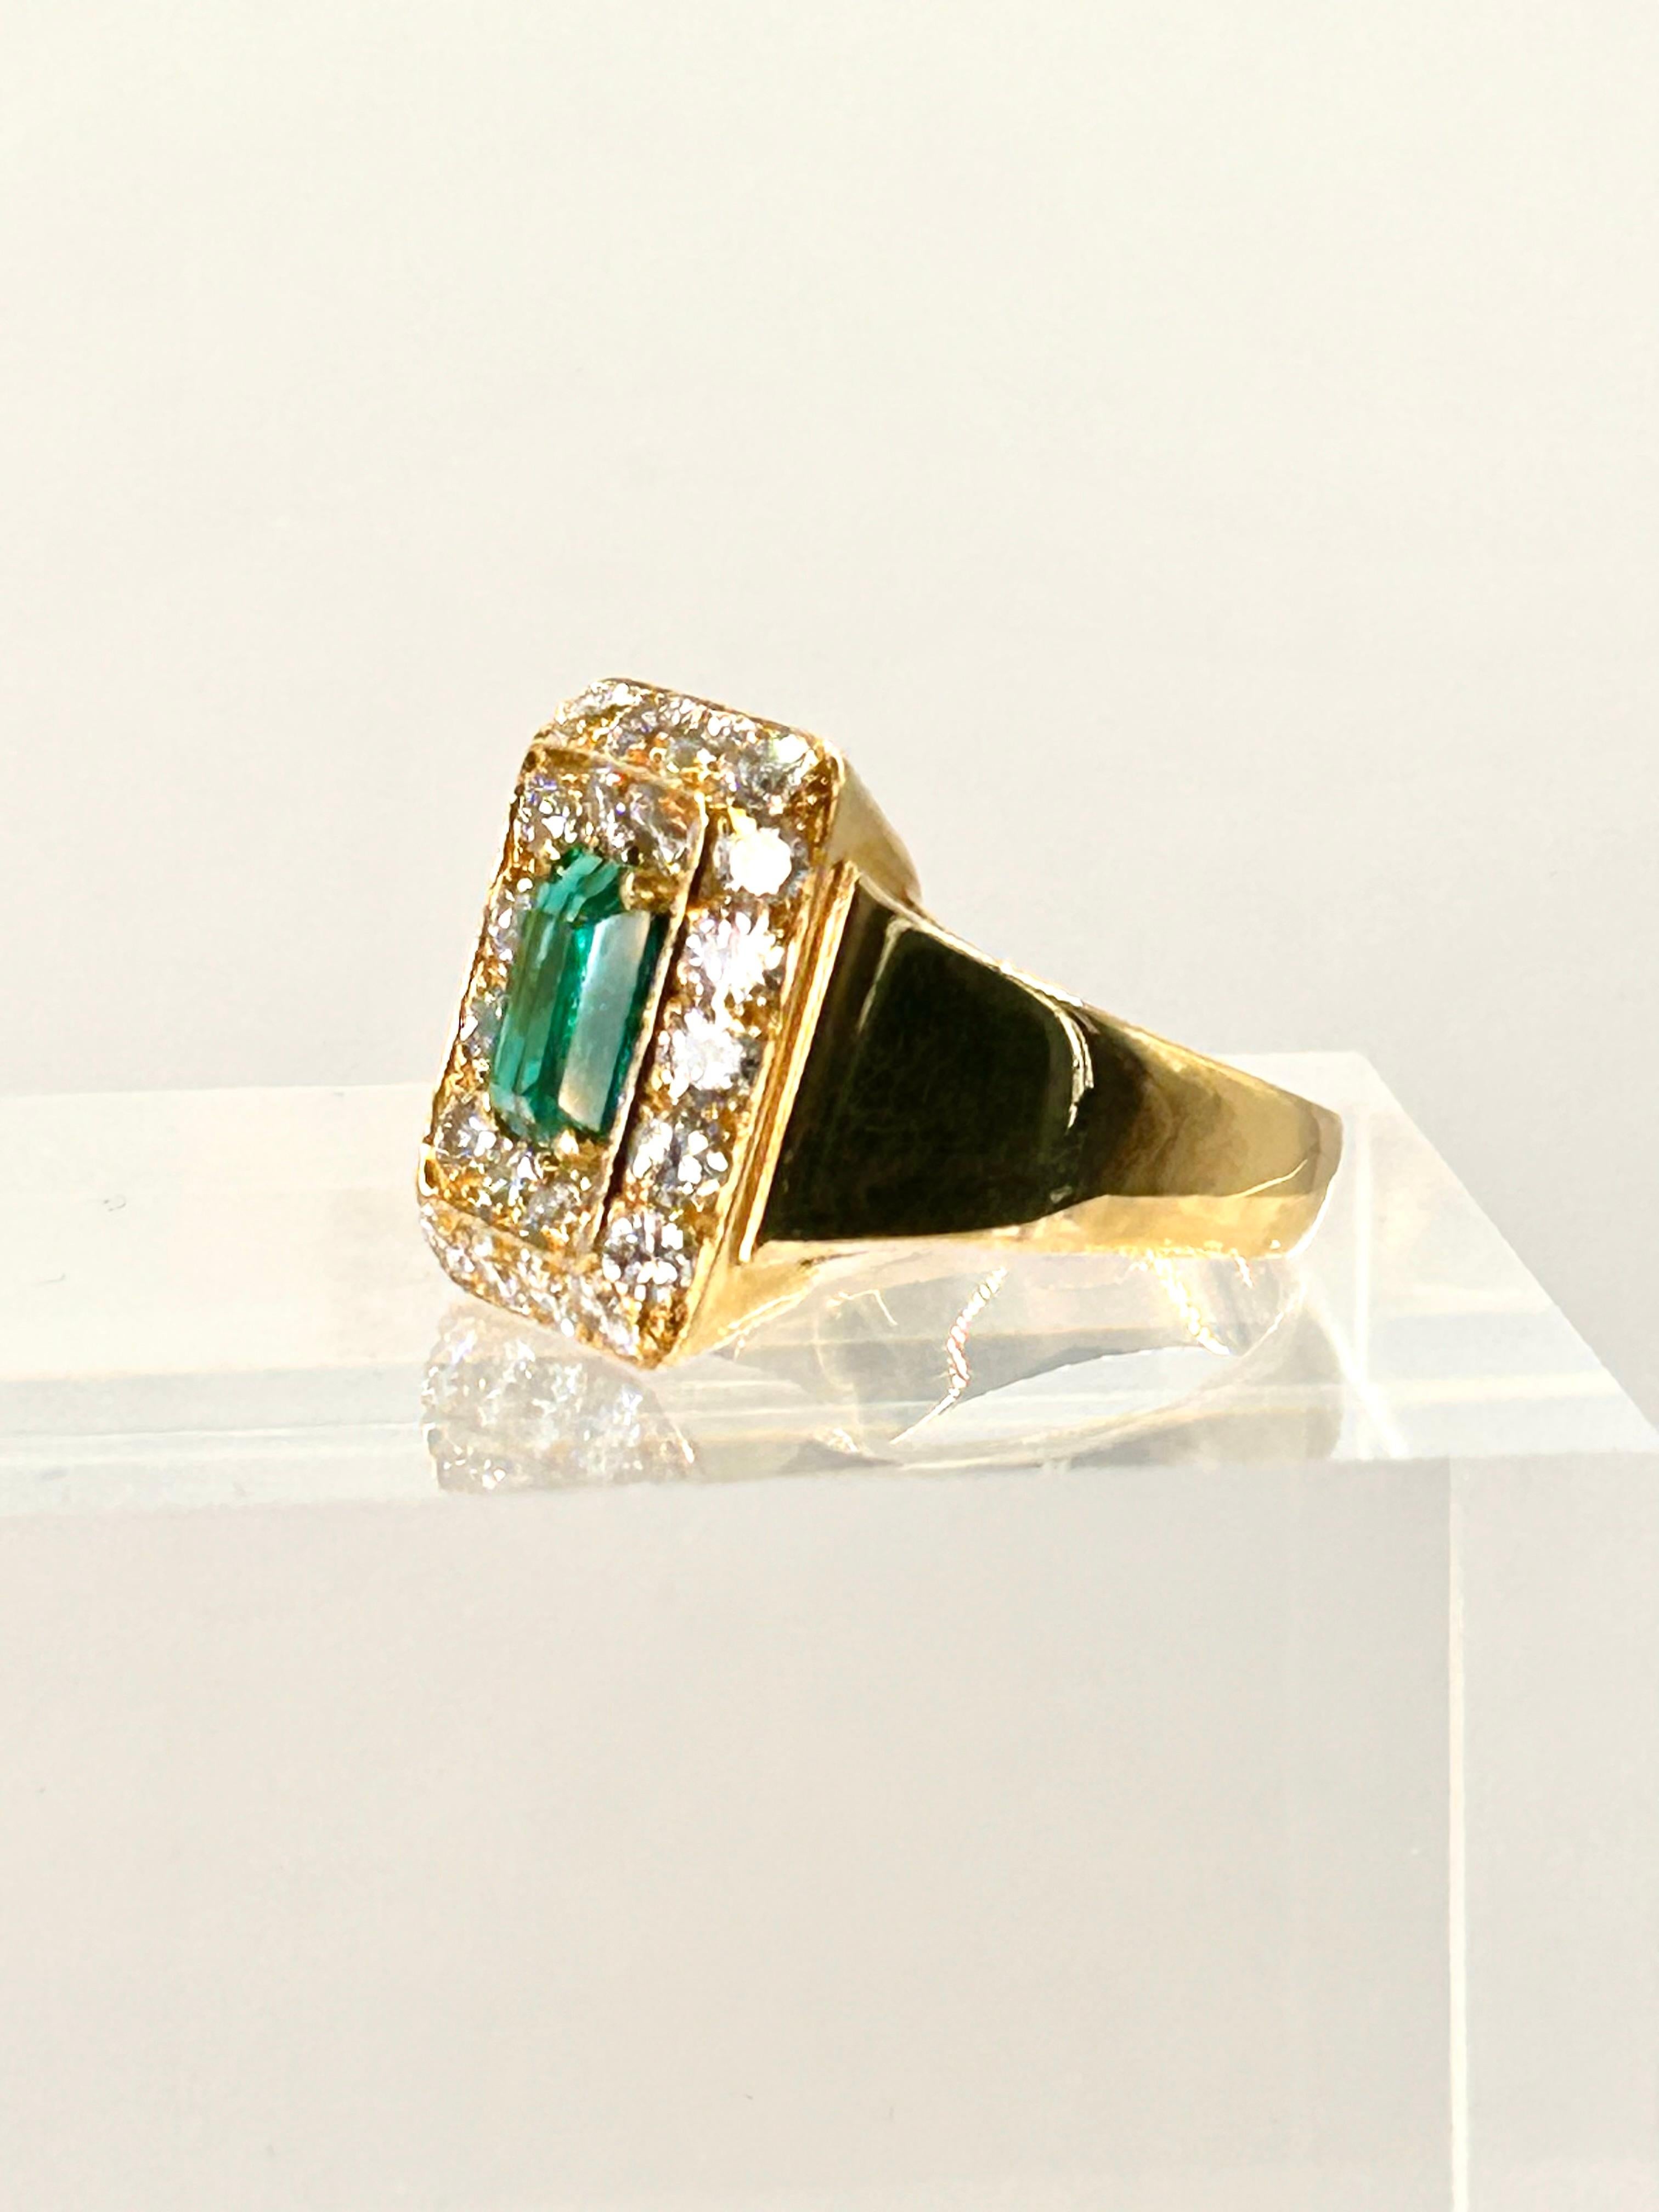 Ring aus 18 Karat Gelbgold, besetzt mit einem Smaragd von 2,01 Karat im Smaragdschliff, zertifiziert von AGL als kolumbianischer Ursprung mit geringer traditioneller Behandlung.  Der lebhaft grüne Smaragd ist umgeben von runden Diamanten im